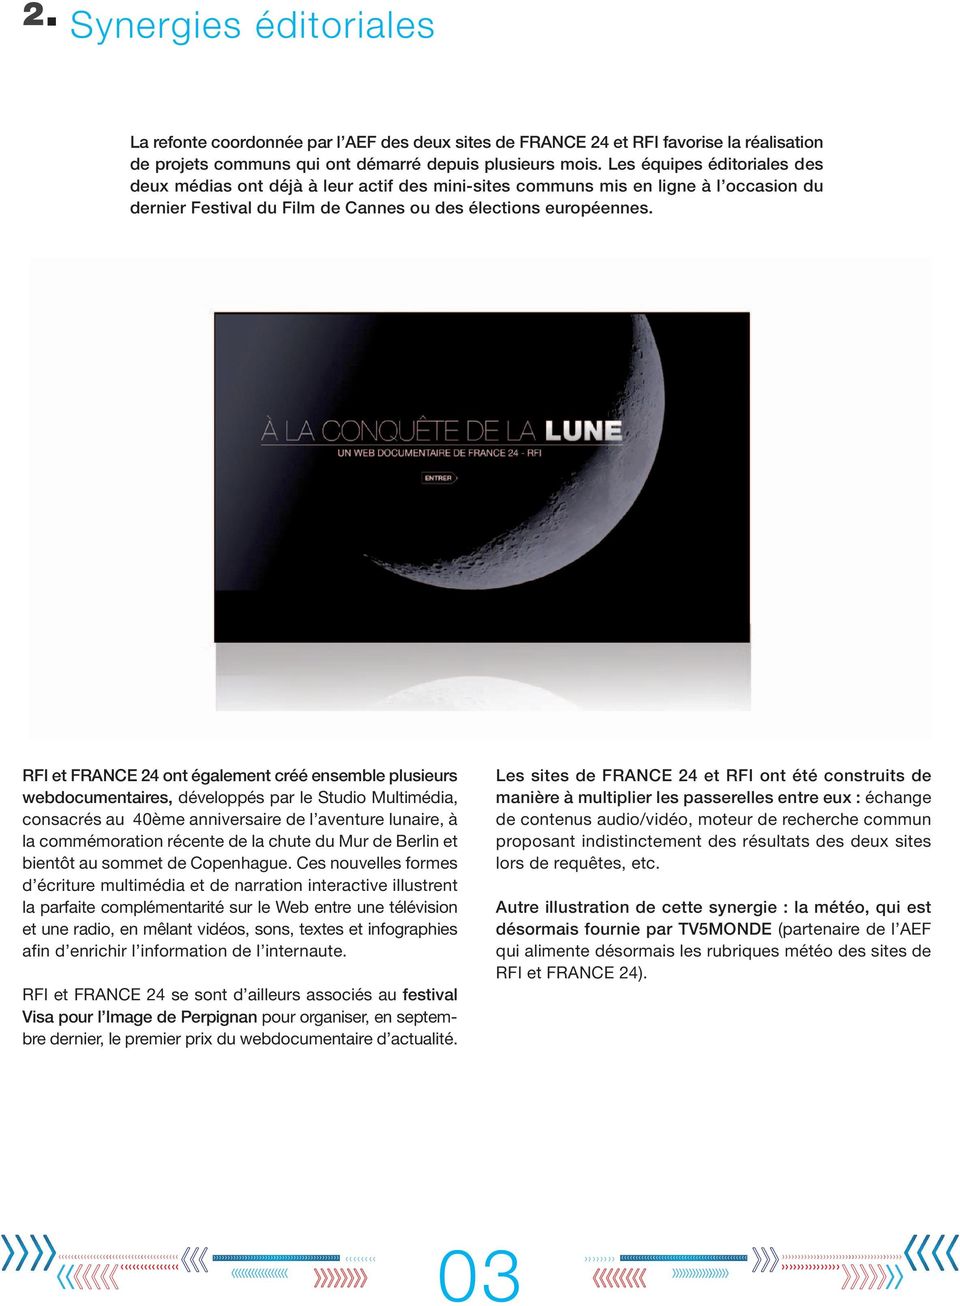 RFI et FRANCE 24 ont également créé ensemble plusieurs webdocumentaires, développés par le Studio Multimédia, consacrés au 40ème anniversaire de l aventure lunaire, à la commémoration récente de la